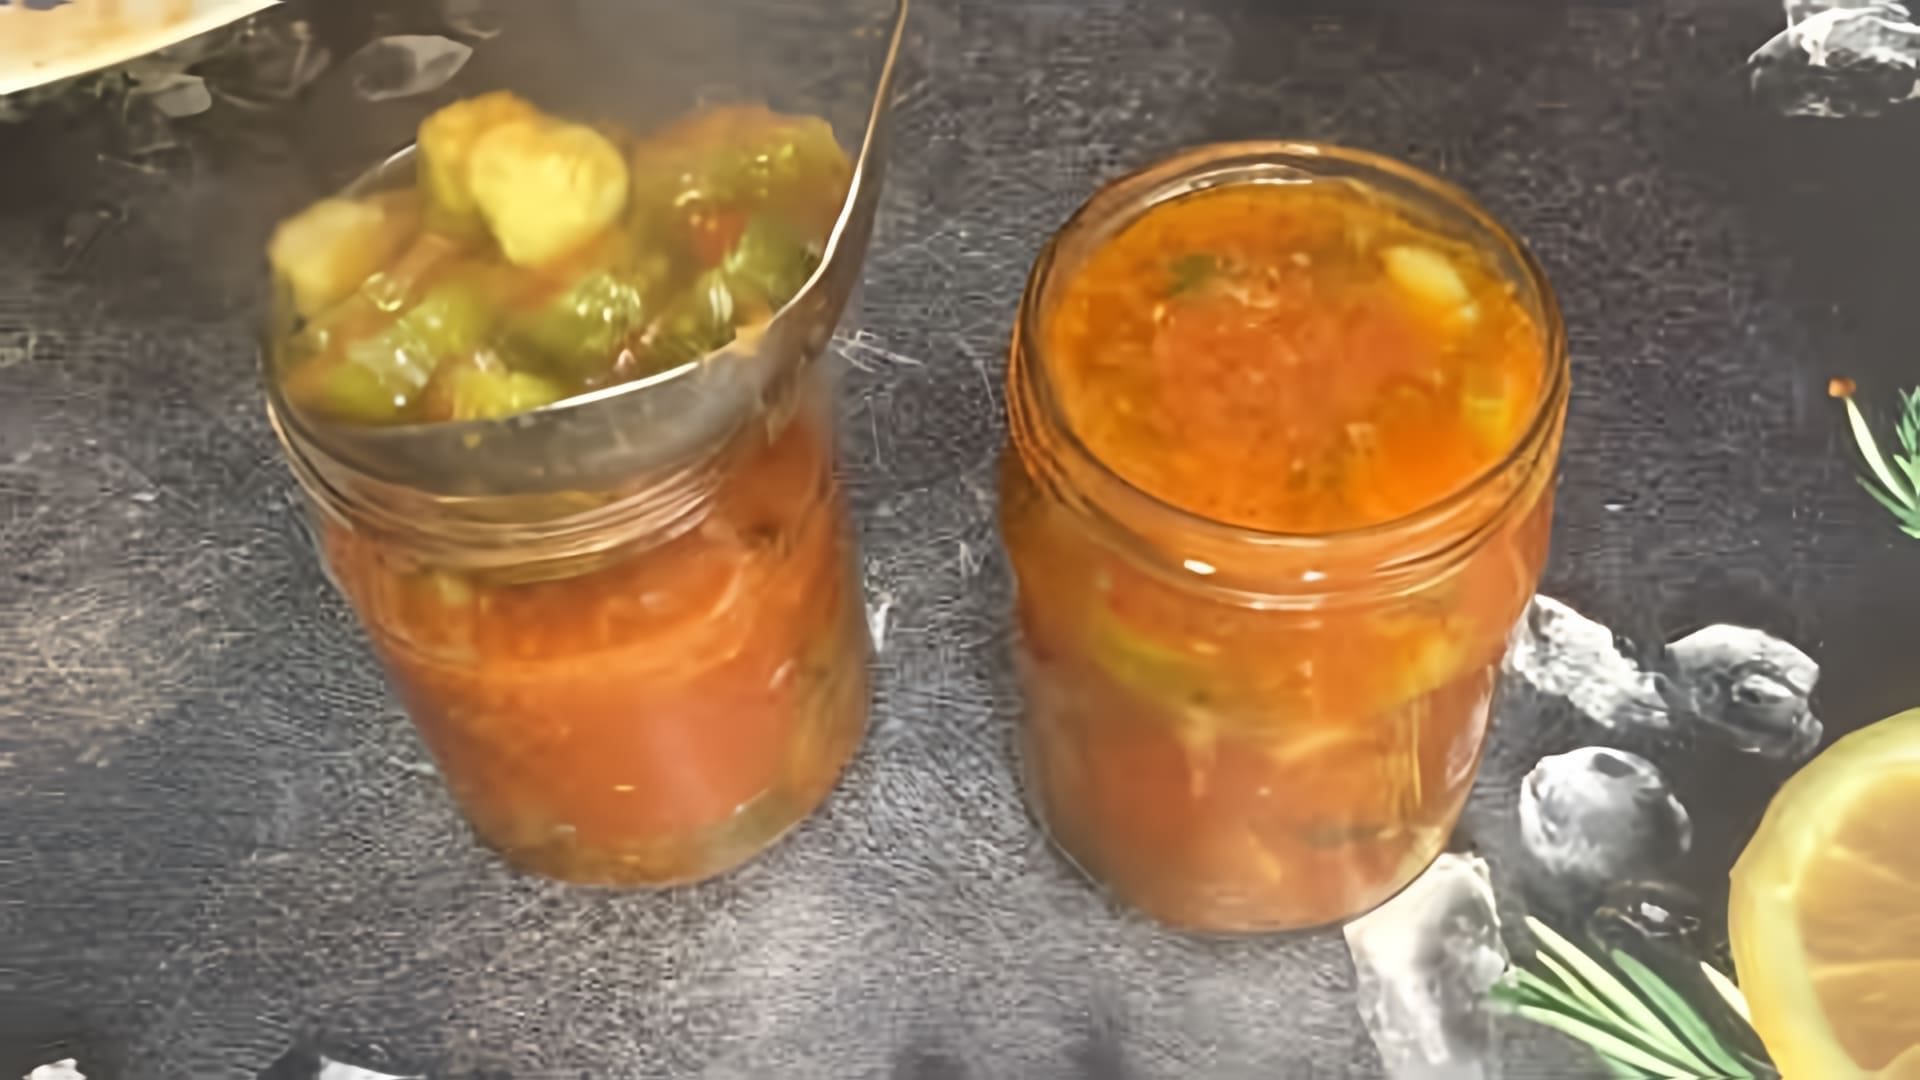 В этом видео демонстрируется процесс приготовления огурцов в томате